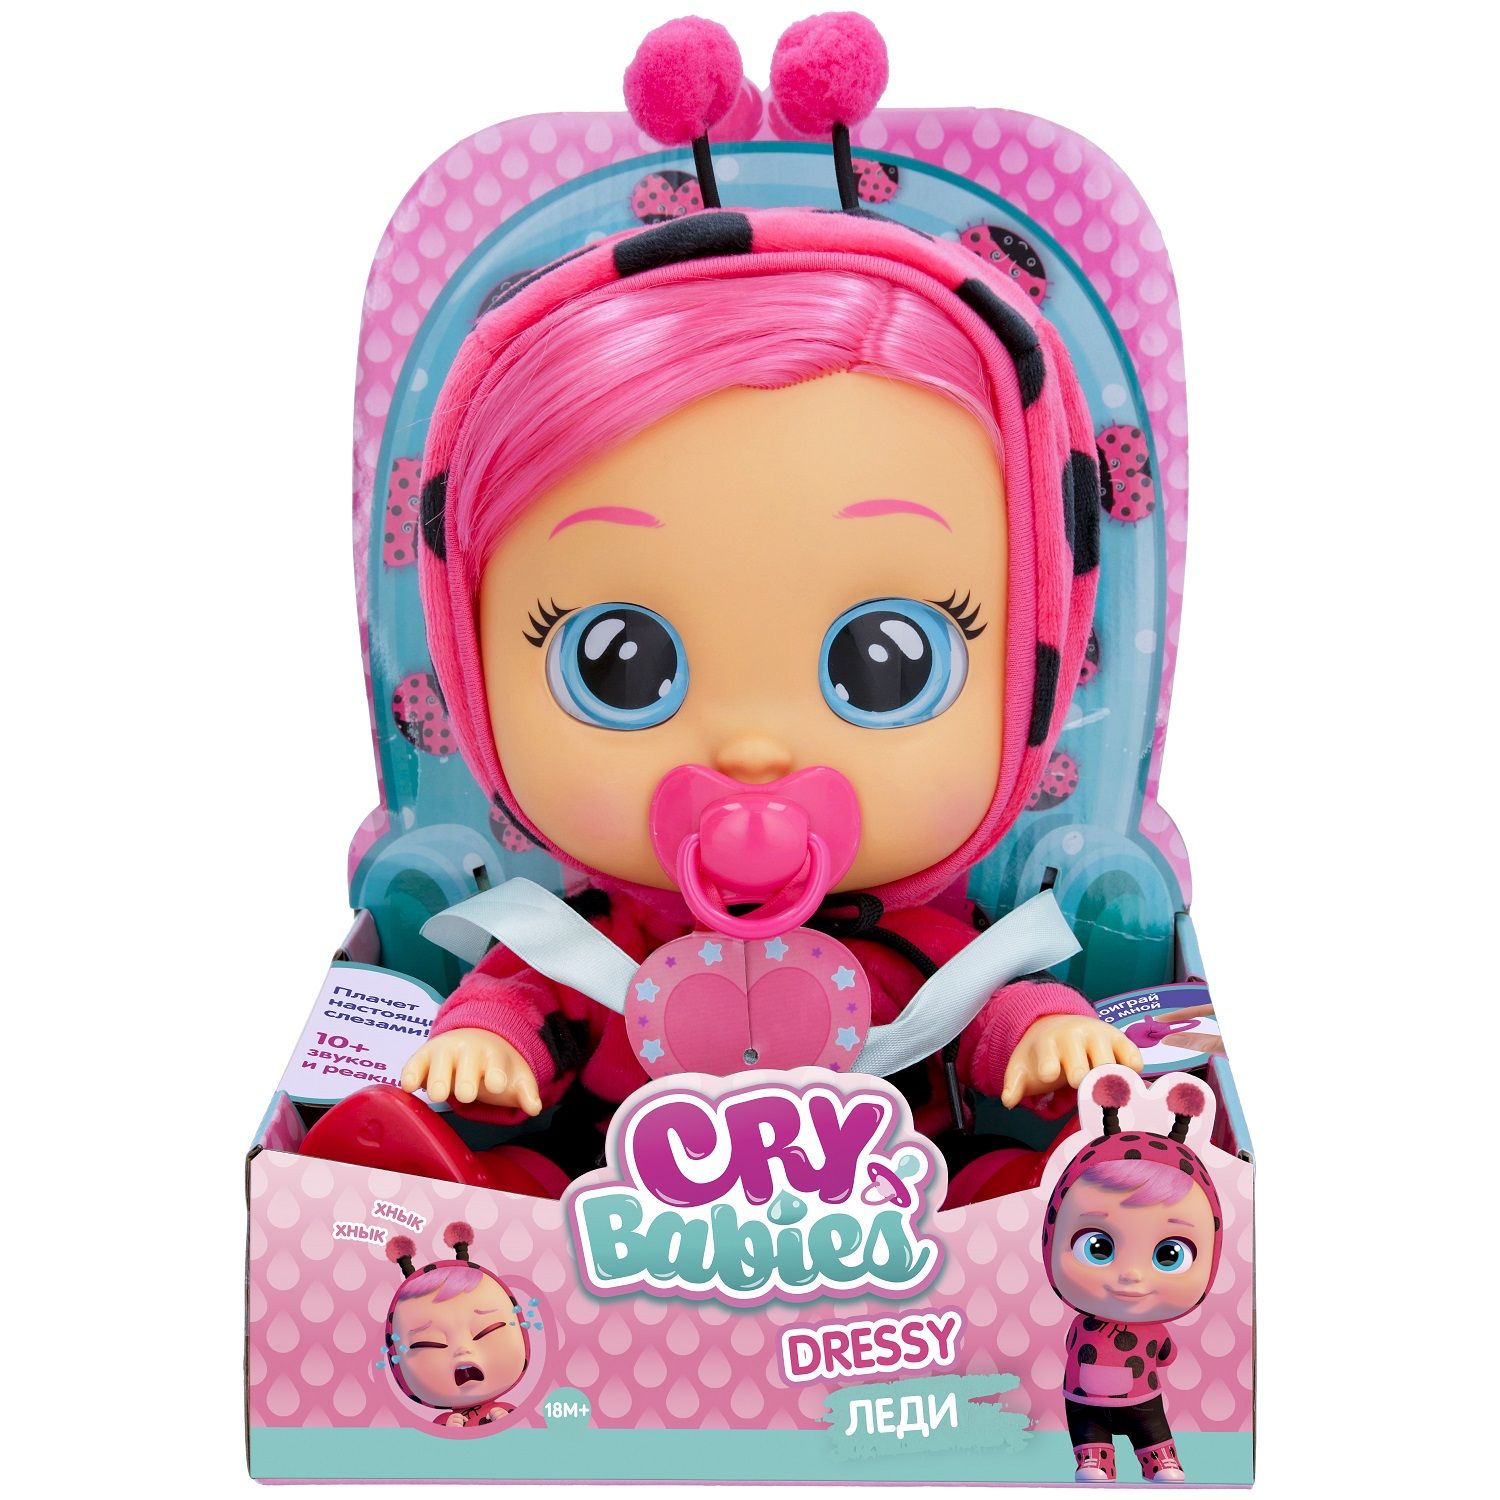 Купить куклу crying babies. Пупс IMC Toys Cry Babies леди. Кукла Cry Babies Донни. Cry Babies Dressy кони интерактивная.